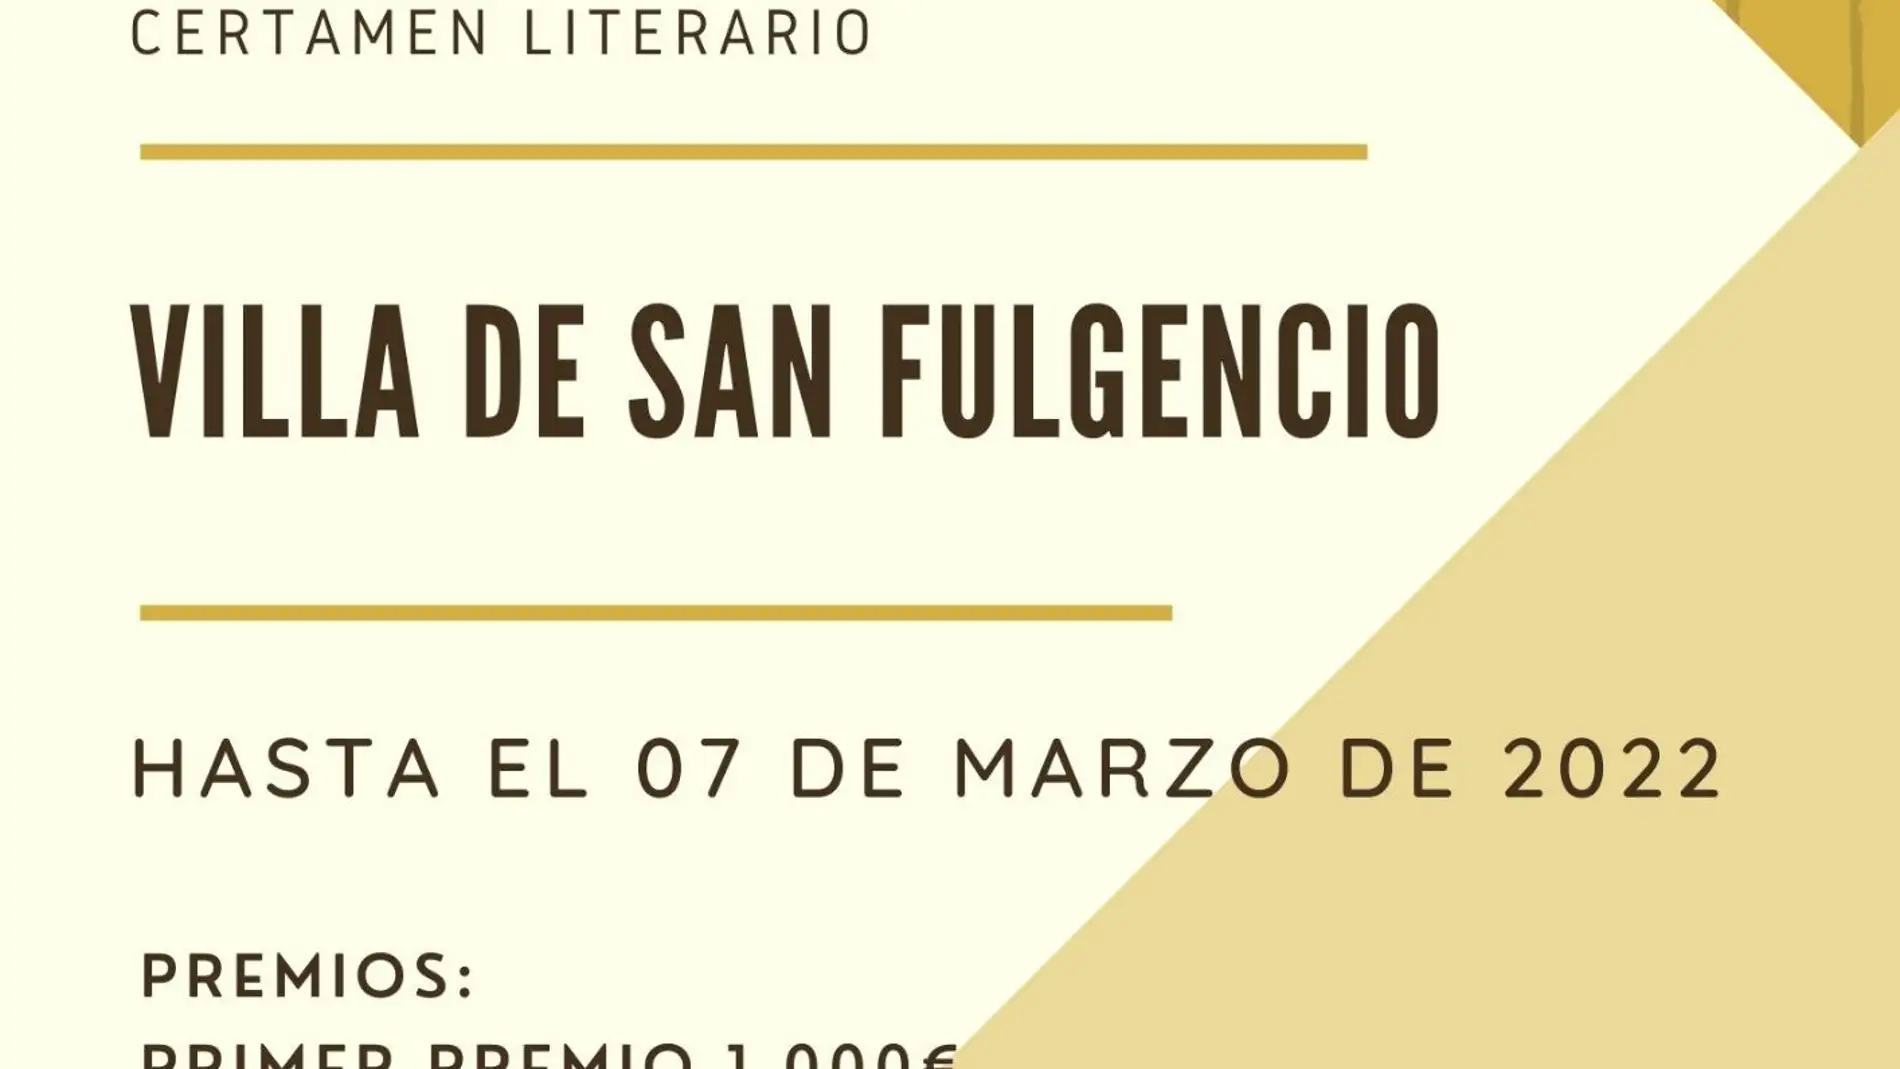 El Ayuntamiento de San Fulgencio publica las bases y la convocatoria para su certamen literario de 2022 